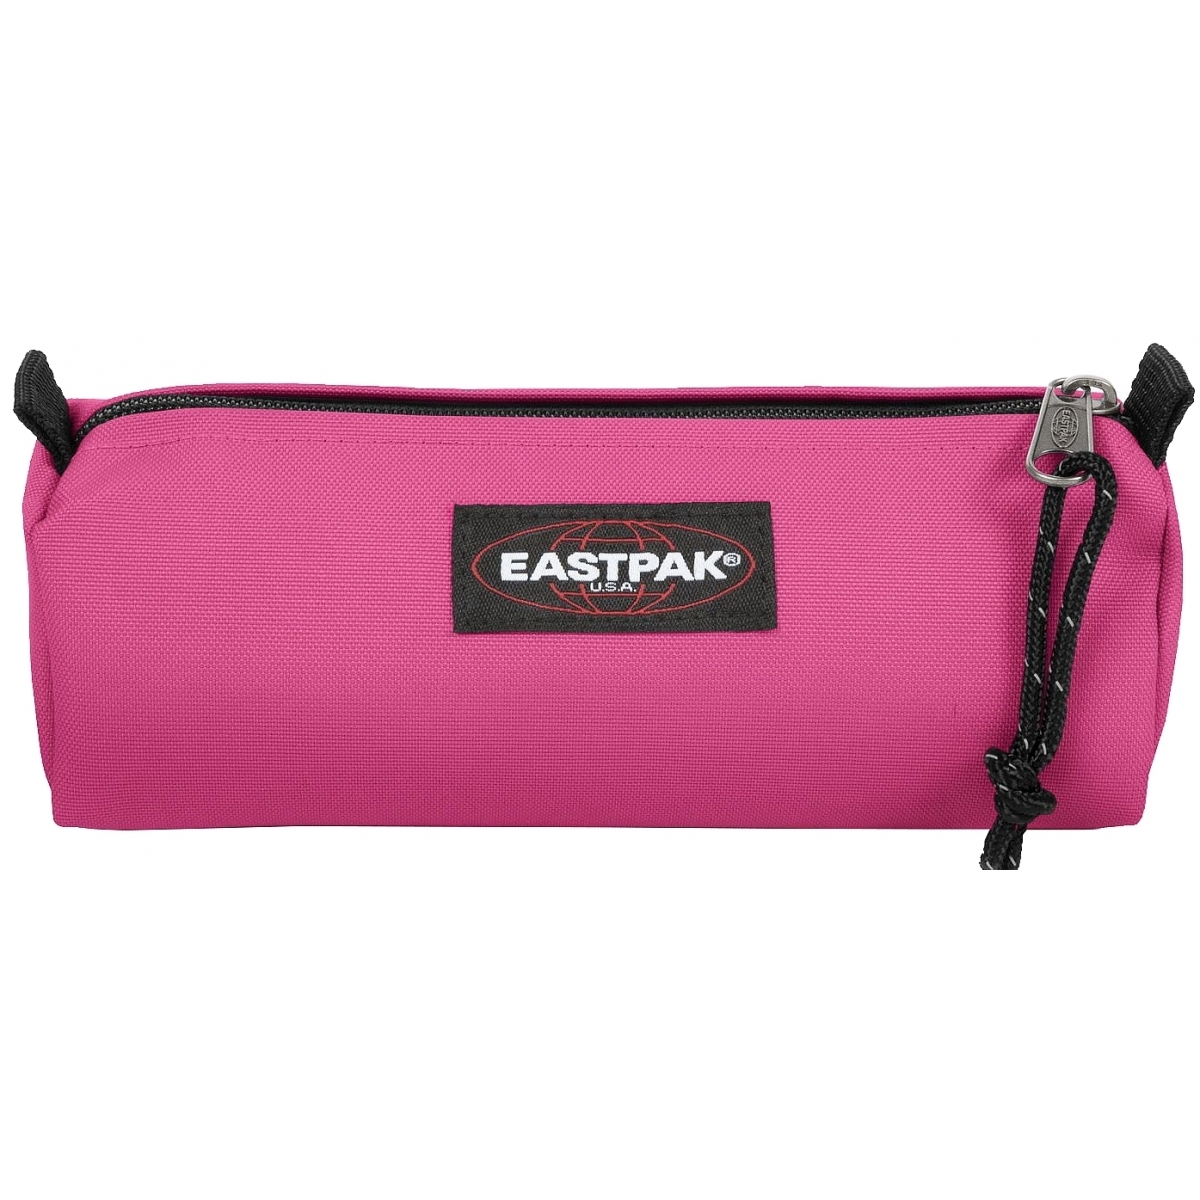 Sacs et accessoires Eastpak - Achat / Vente Sacs et accessoires Eastpak pas  cher ( Couleur: rose )